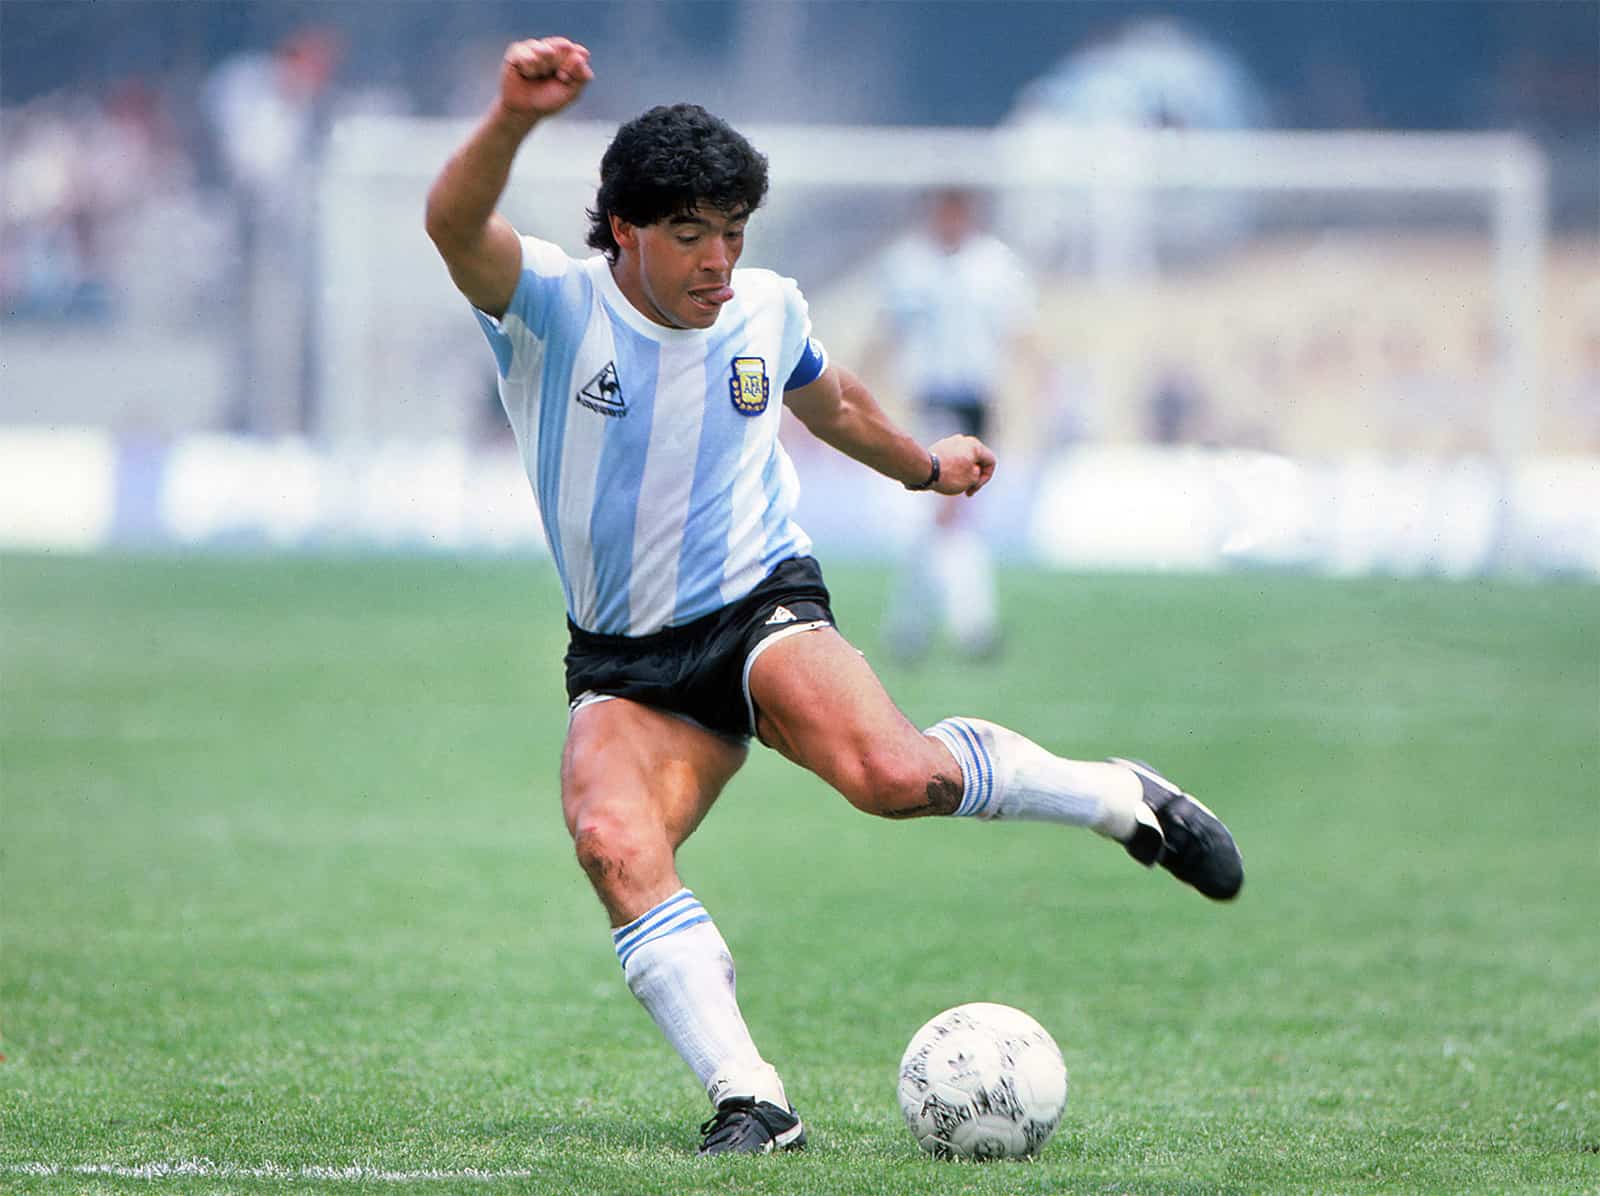 Ο θρύλος του ποδοσφαίρου Diego Maradona πέθανε σε ηλικία 60 ετών